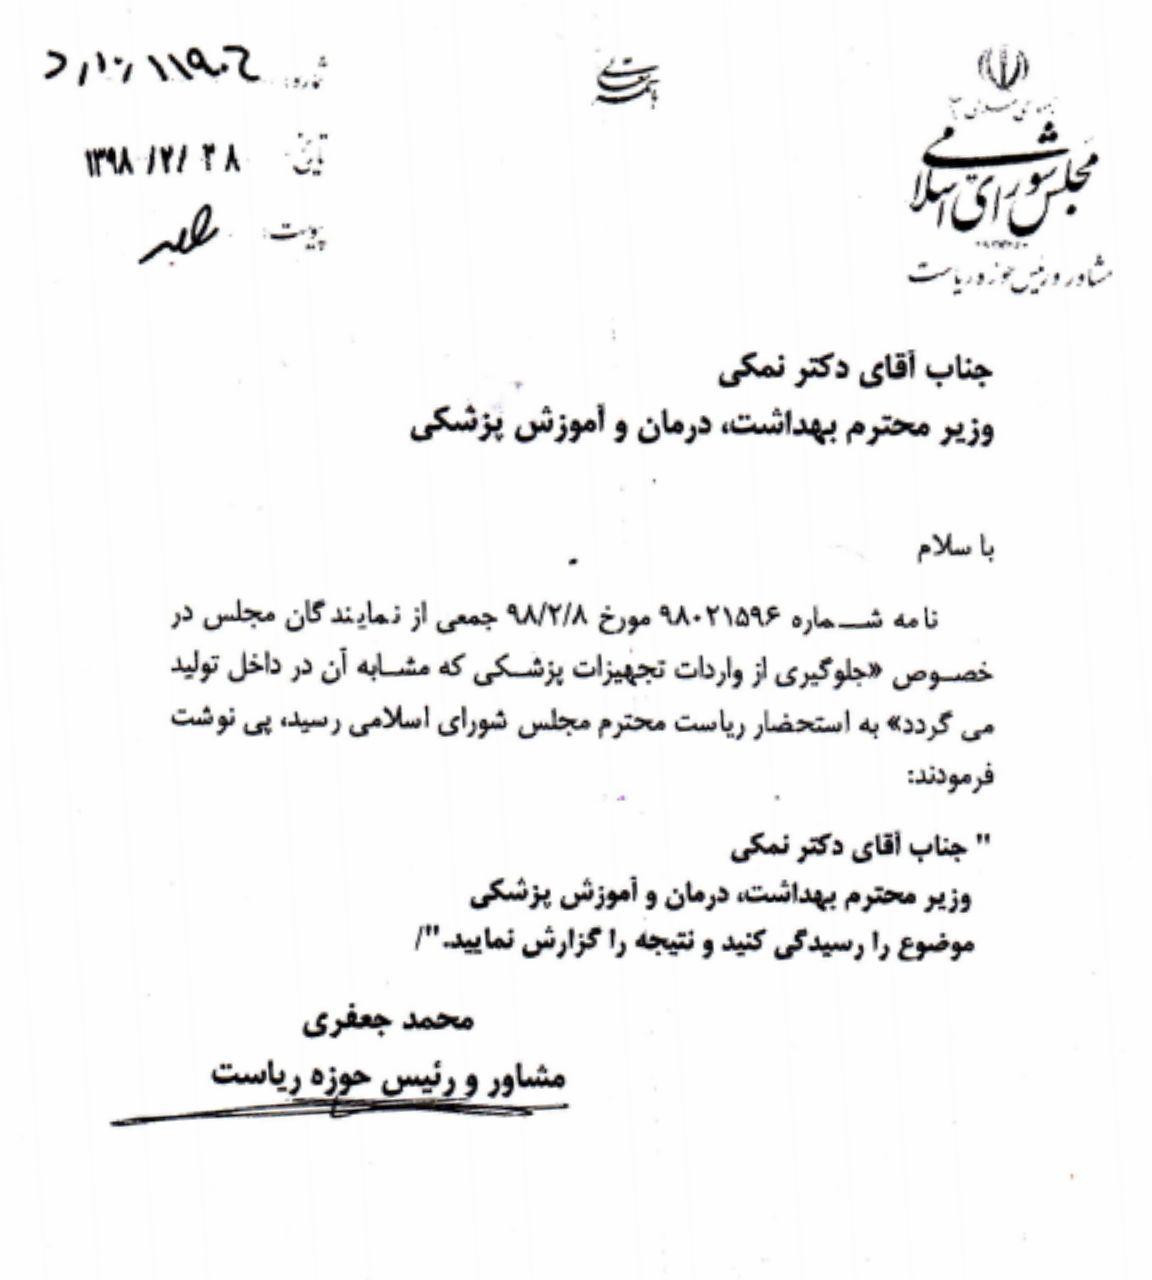 دستور لاریجانی به وزارت بهداشت  برای منع واردات تجهیزات پزشکی که مشابه آن در داخل ساخته می شود + سند